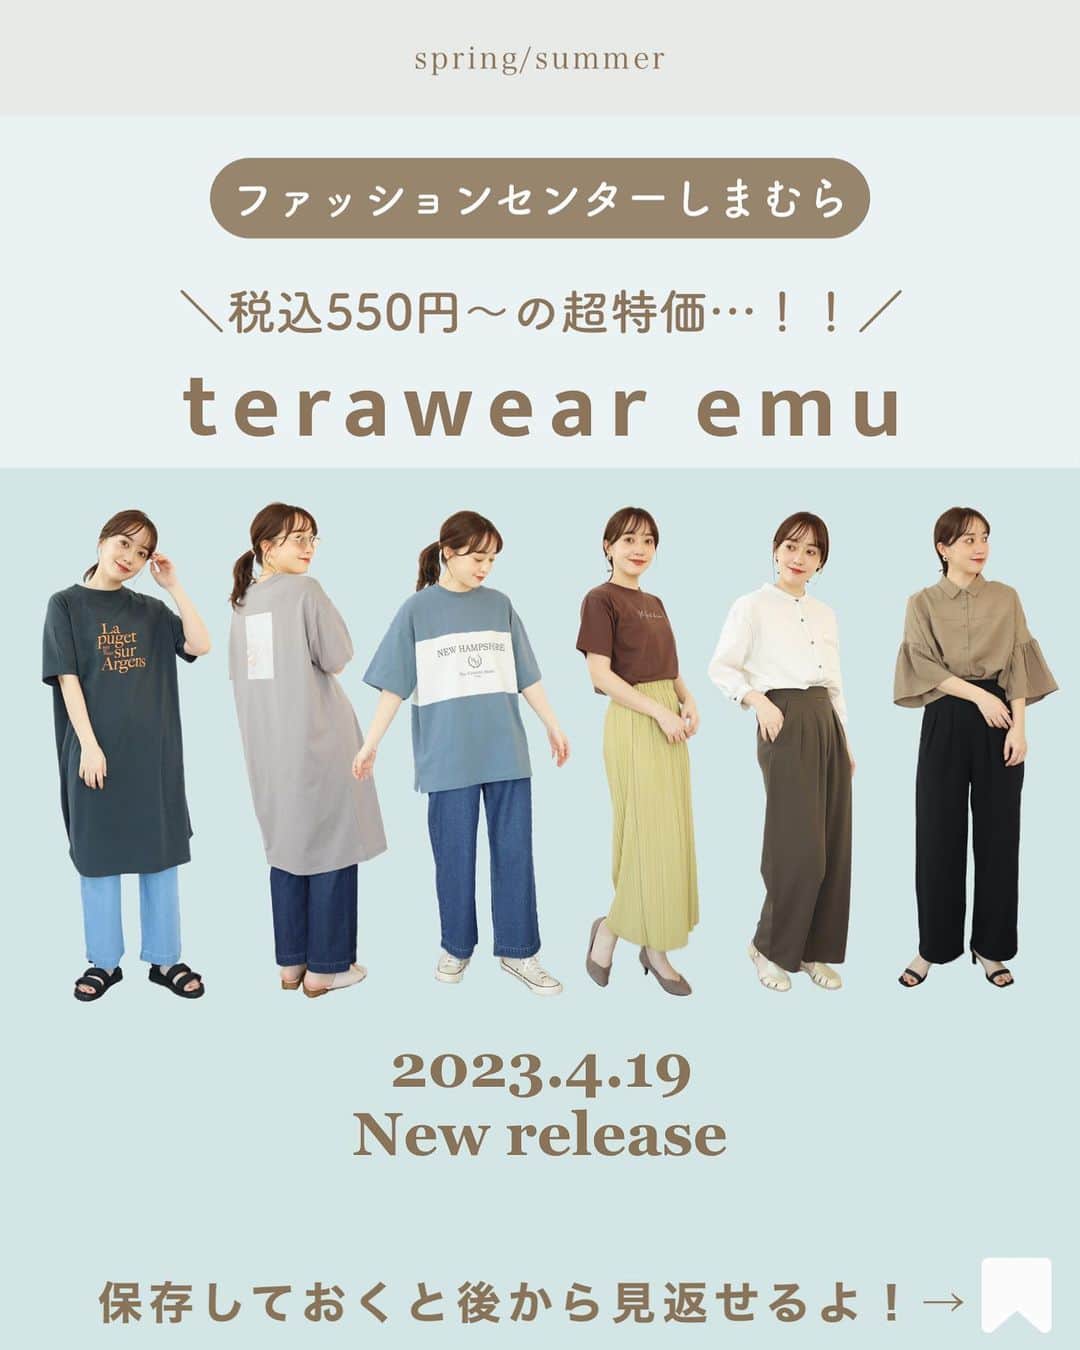 てらのインスタグラム：「🉐terawear emu特価アイテム発売🉐  いつも見てくださりありがとうございます😊❤️ いつも応援してくださる皆さんに 大事なお知らせです！！  @grshimamura  ファッションセンターしまむらにて展開中の 私のプロデュースブランド 「terawear emu」の新作が 4月19日(水)から店頭にて販売されます！  （オンラインストアは4月20日(木)9時〜販売）  今回の新作は 絶対チェックして欲しい…🥹✨   なんとemuのお洋服が 税込550円〜という特価で GETできちゃいます…！！🌈  ロゴやフォトプリントにこだわった ゆったりシルエットのTシャツワンピースや、 1枚で決まる可愛いTシャツは 夏まで使えるのでぜひGETして欲しい🥹✨  綿100%のデニムも なんと税込1,320円です…！👖🉐 春夏向けのちょうどいい生地感で、 リラックスしてはけるワイドシルエット。 もちろんはきやすさにもこだわってるので お値段以上の仕上がりです！！🫶  そしてイチオシのプリーツスカートは 嬉しい長め丈で5色展開🫶✨ ポケットも裏地も付いていて 税込990円は絶対買いです…🥺✨  トレンドの2タックのワイドパンツは、 美シルエットできれいめ見えするのに カットソー生地だから楽ちんなんです🥺🫶 お手入れも簡単だから気軽にはけちゃいます 🫧  ステッチシャツは、1枚で着るのはもちろん、 羽織りとしても活躍してくれます🍒 軽い着心地で、夏にも使える一着です◎  袖フリルのシャツも注目アイテム！ シルエットとても可愛く仕上がってます！ 1枚で着ても可愛いし、 ジレなどを合わせても可愛いです◎  どれも特価とは思えないクオリティだし 自信をもっておすすめします！！  そして、4月18日(火)12時〜 ライブ配信をします🎬🎵 こだわりの新作たちをお披露目します😊🌷 みんなに会えるの楽しみ🫶✨  #しまパト#しまむら#しまむらパトロール#しまむらコーデ#ファッションセンターしまむら#プチプラ#プチプラコーデ#ママコーデ#terawearemu#きっと見つかる#みんなワクワク#春コーデ#春夏コーデ」